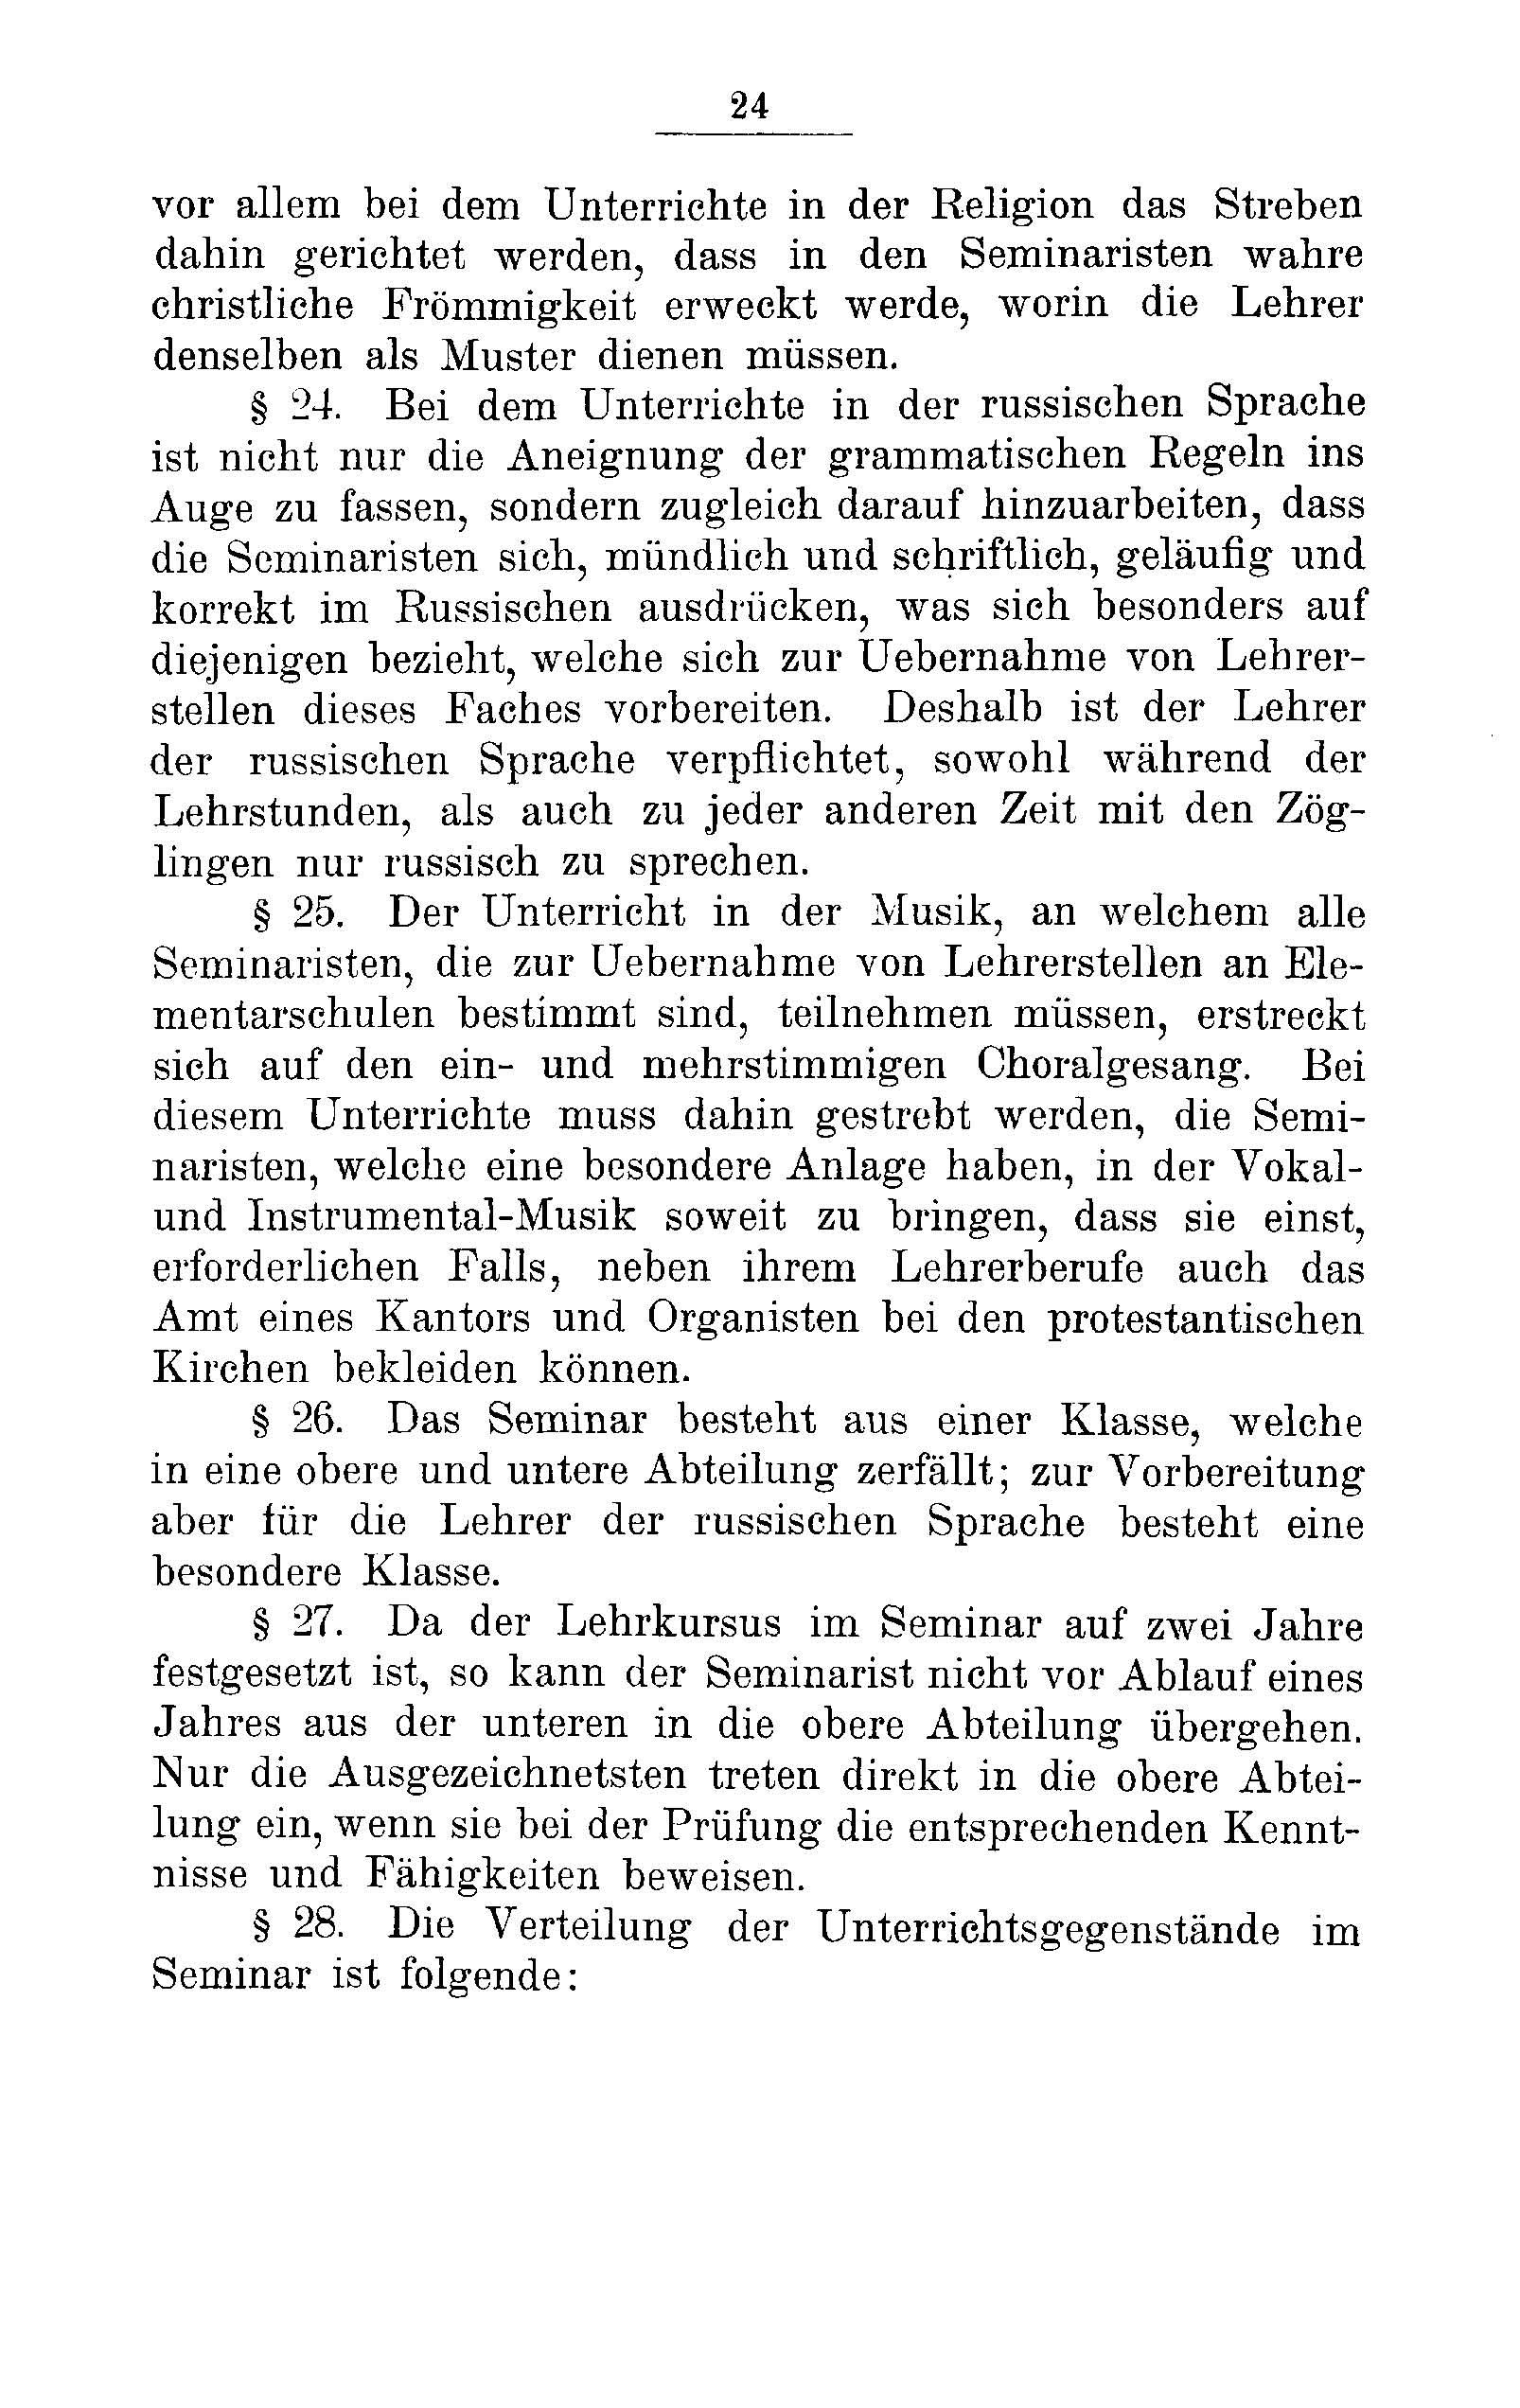 Das Erste Dorpatsche Lehrer-Seminar (1890) | 26. Main body of text